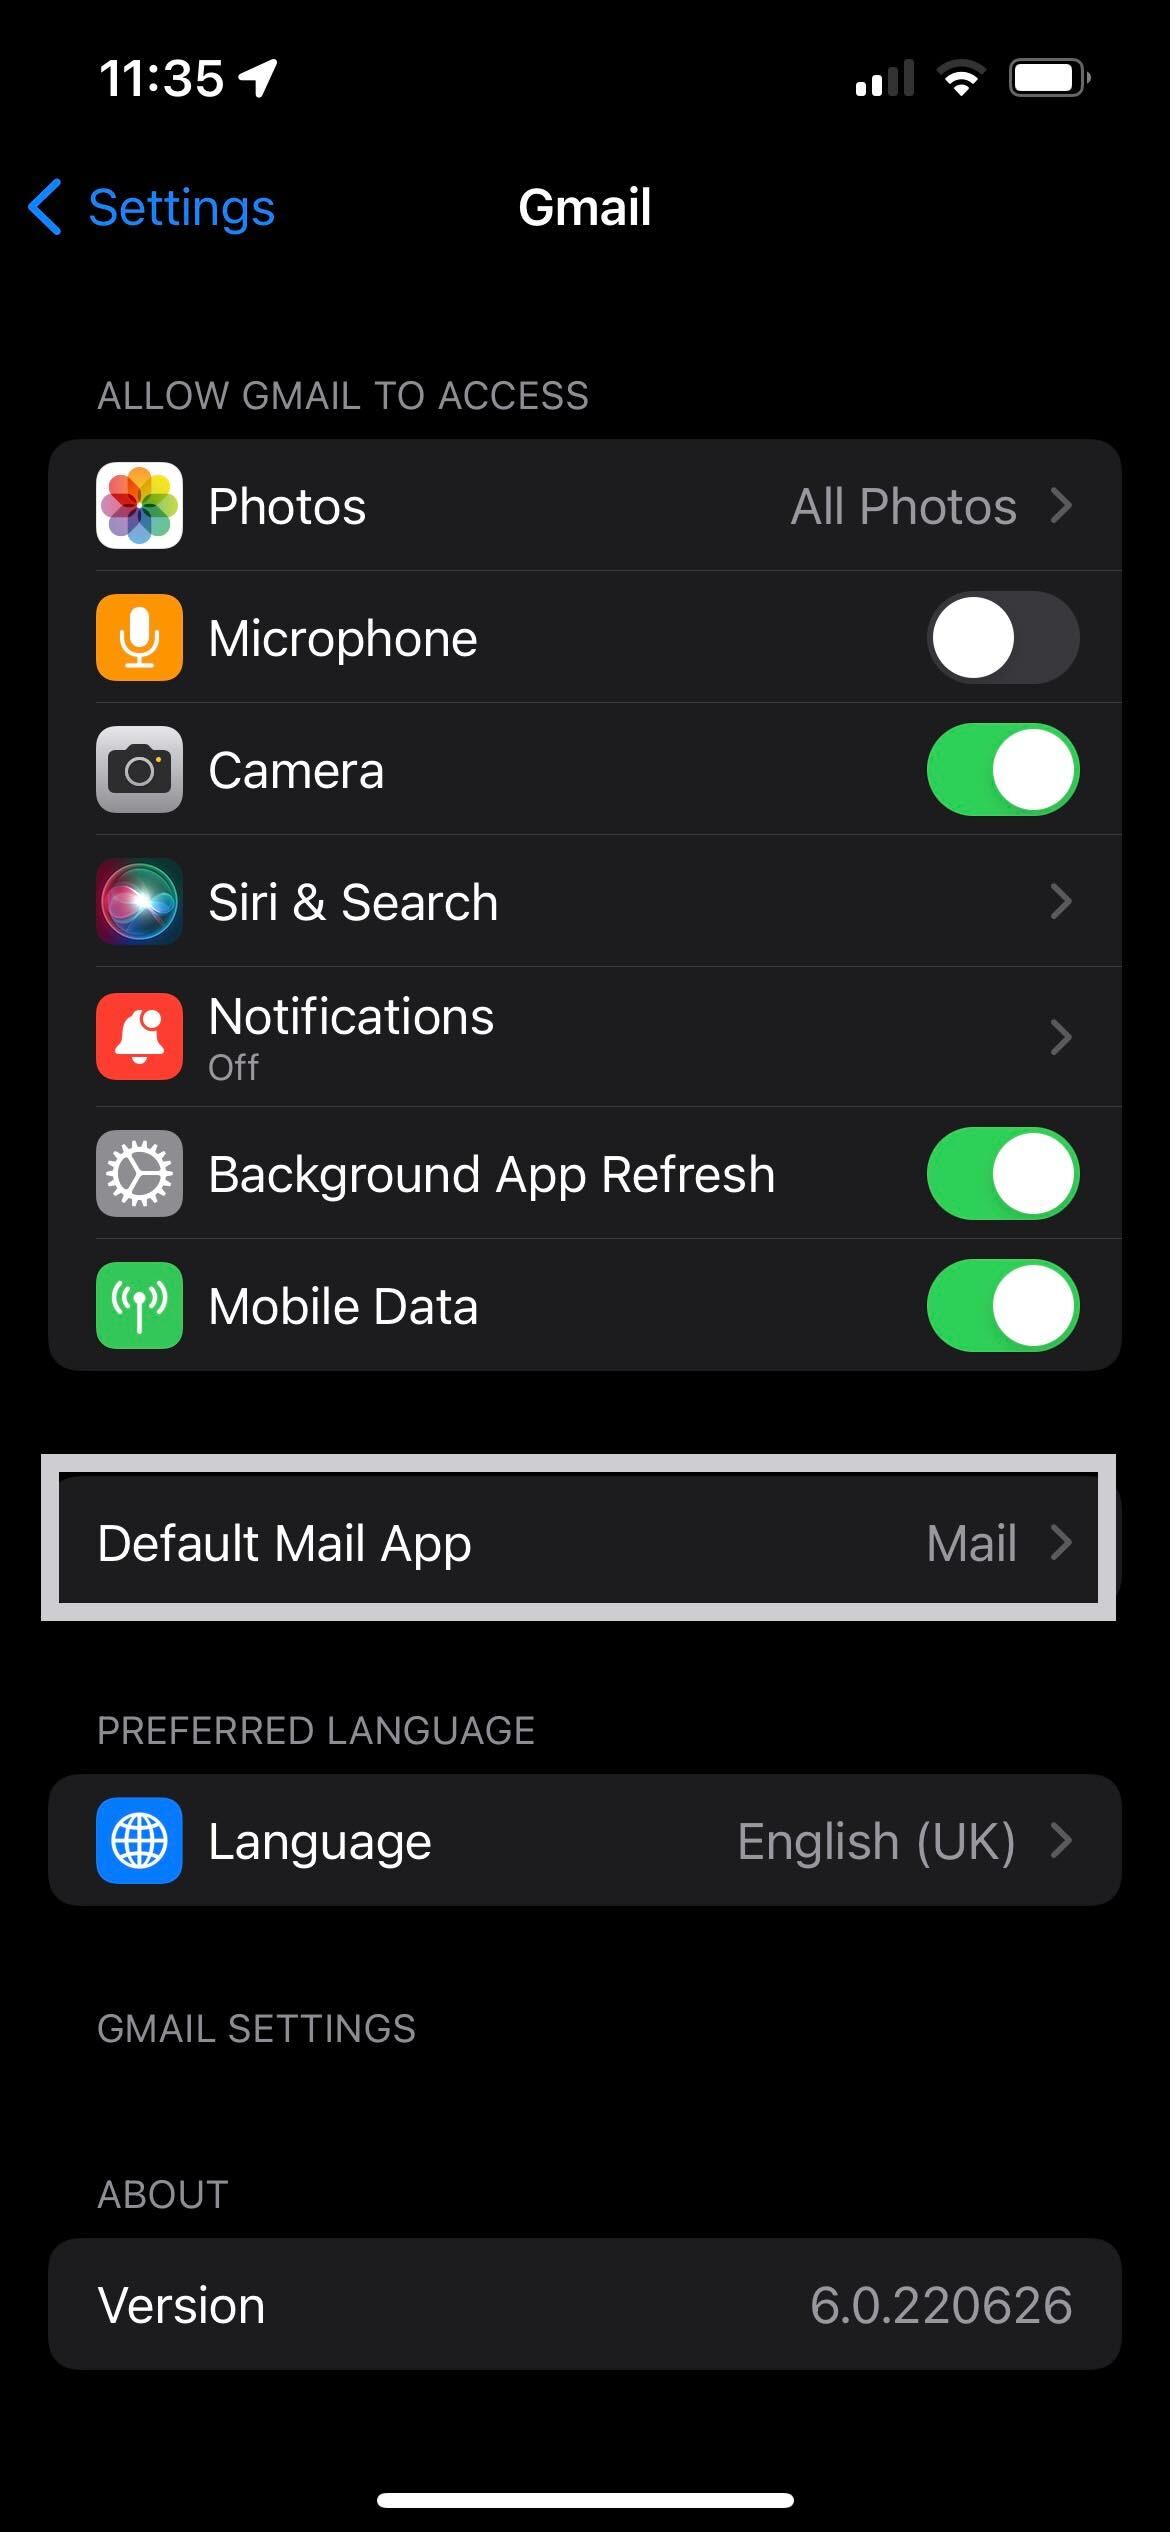 The Default Mail App on iOS